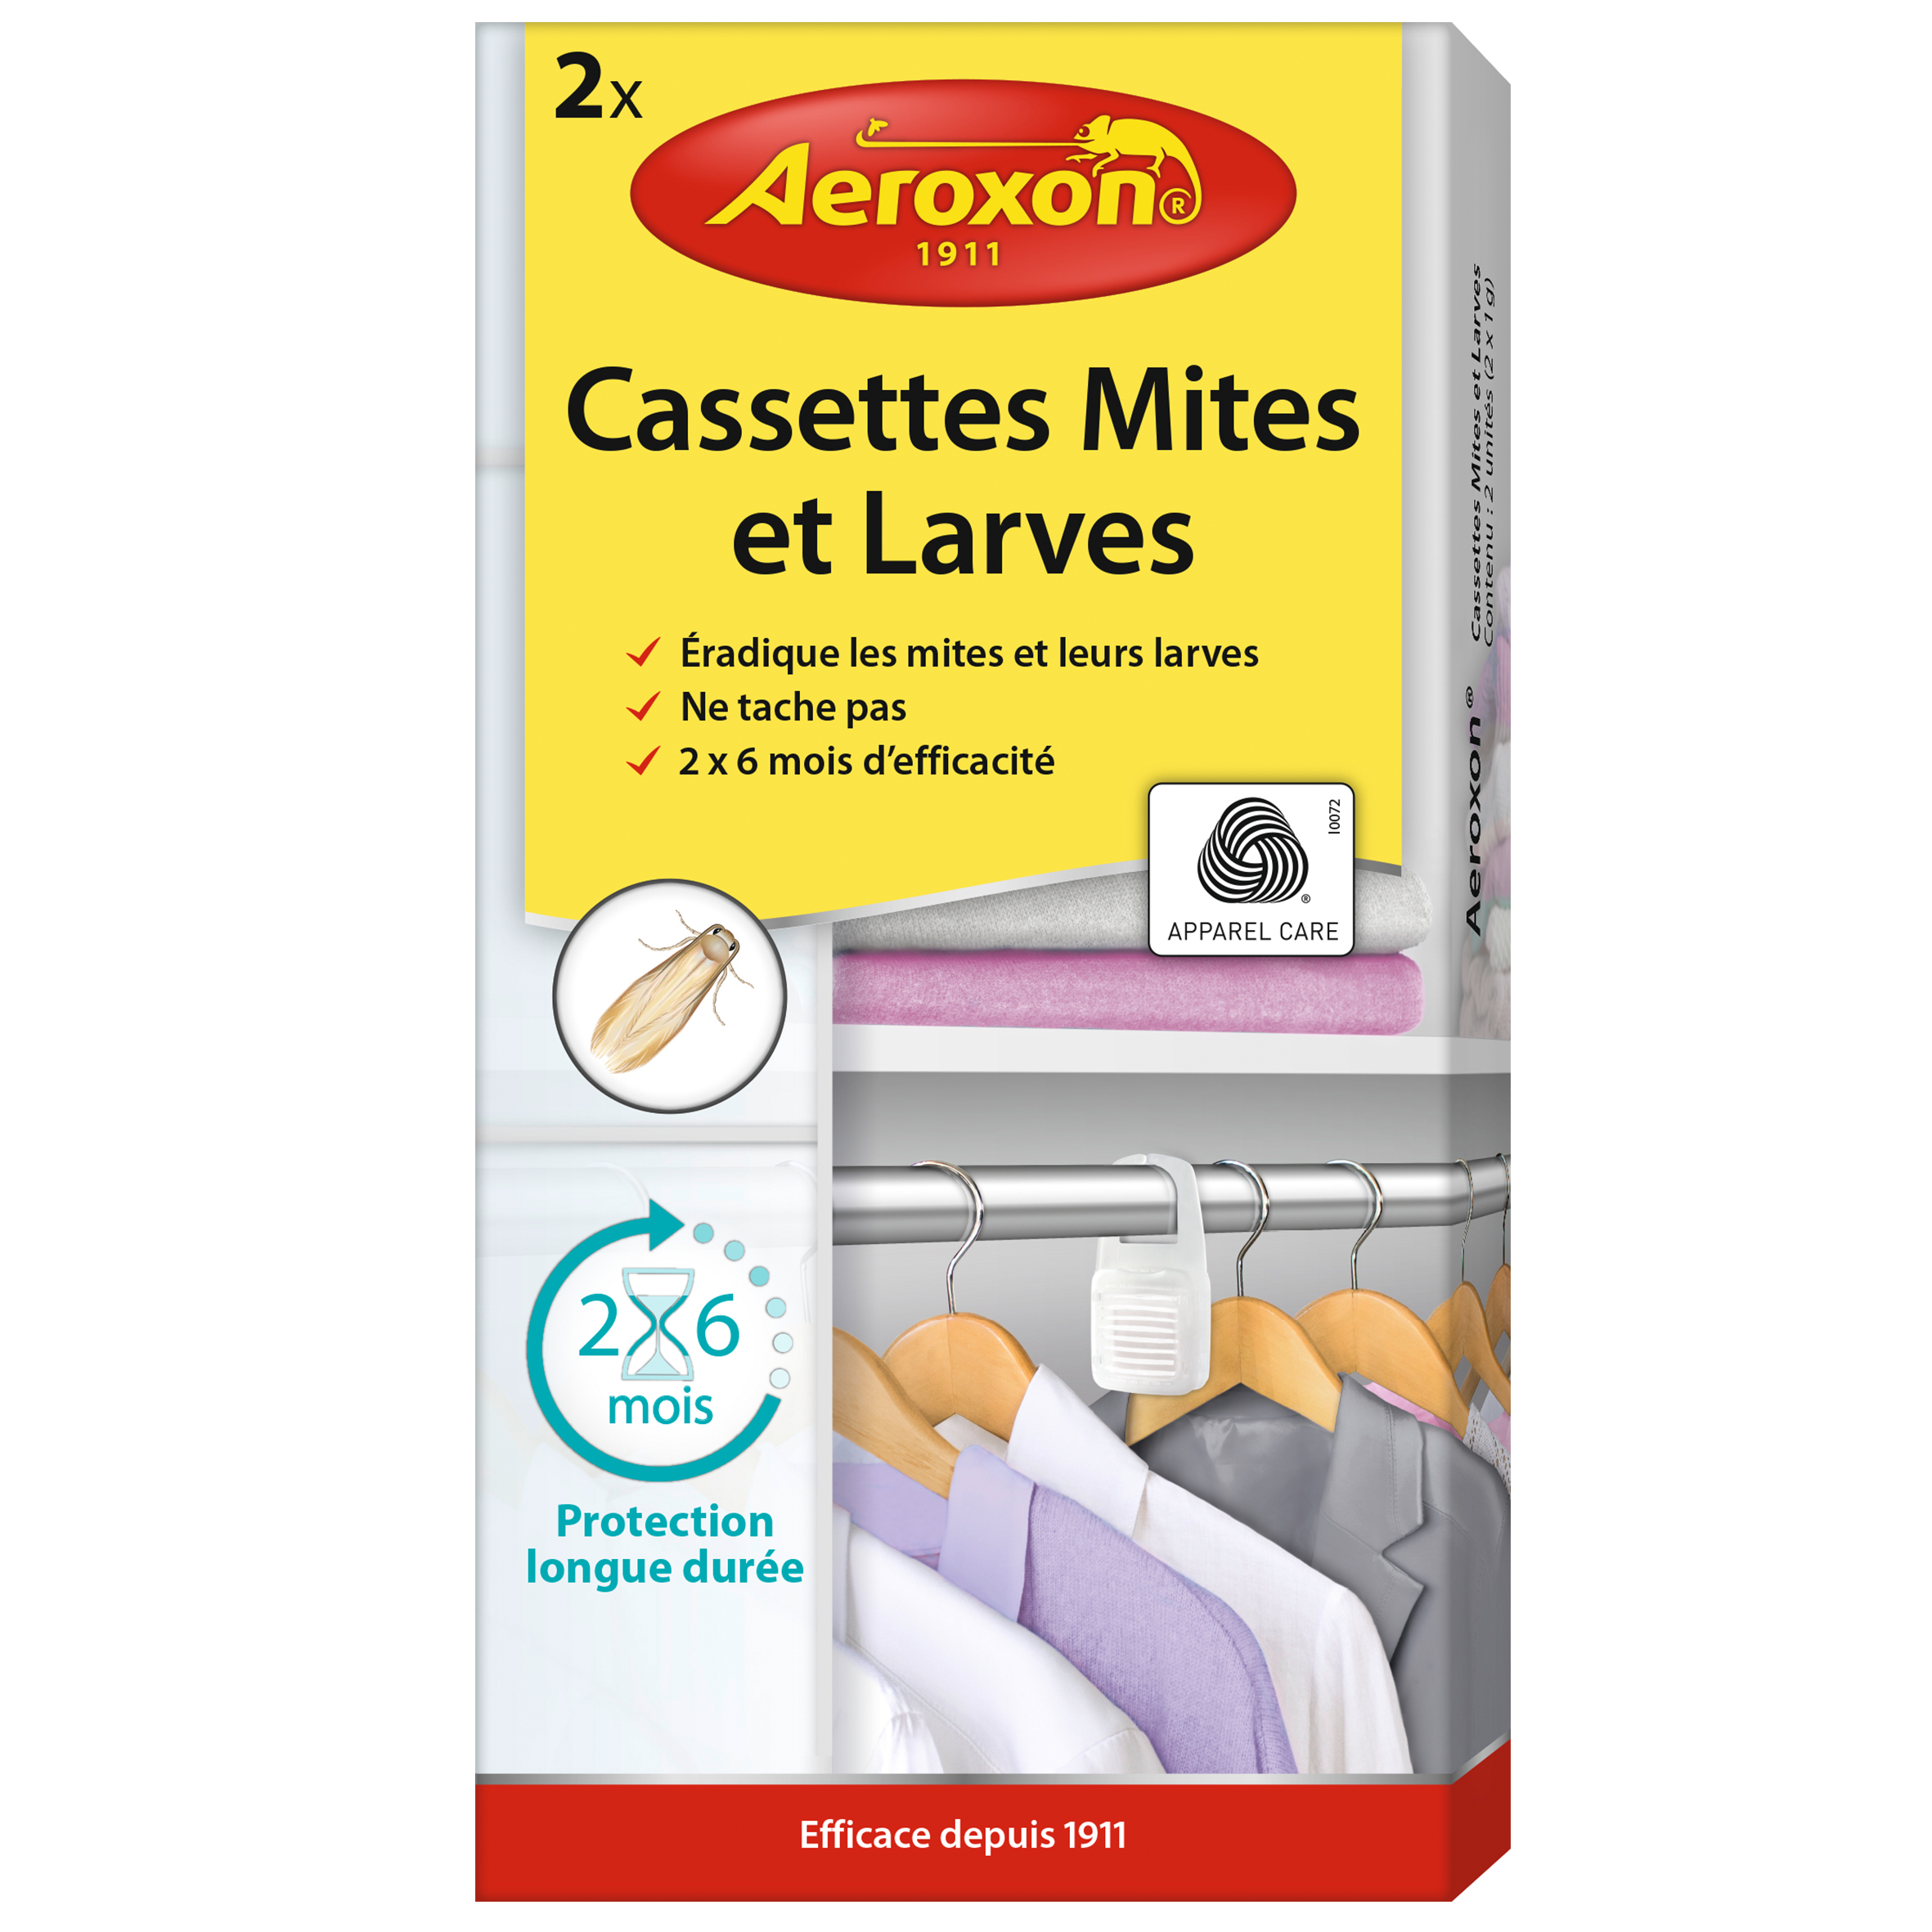 Aeroxon Cassettes Mites et Larves 2 pcs. image